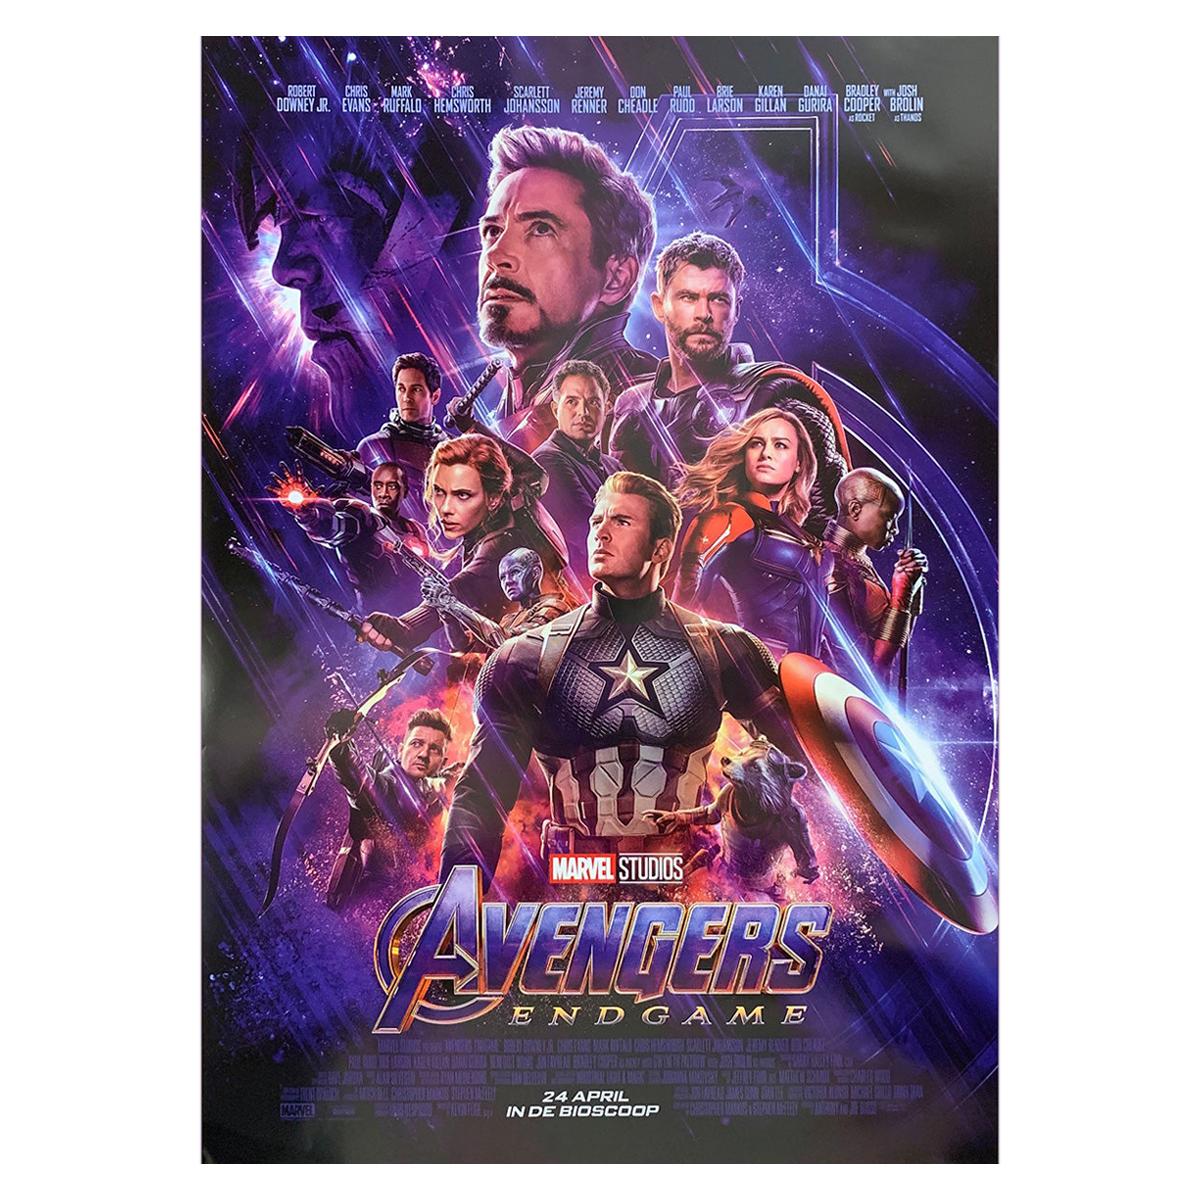 Avengers: Endgame '2019' Poster For Sale